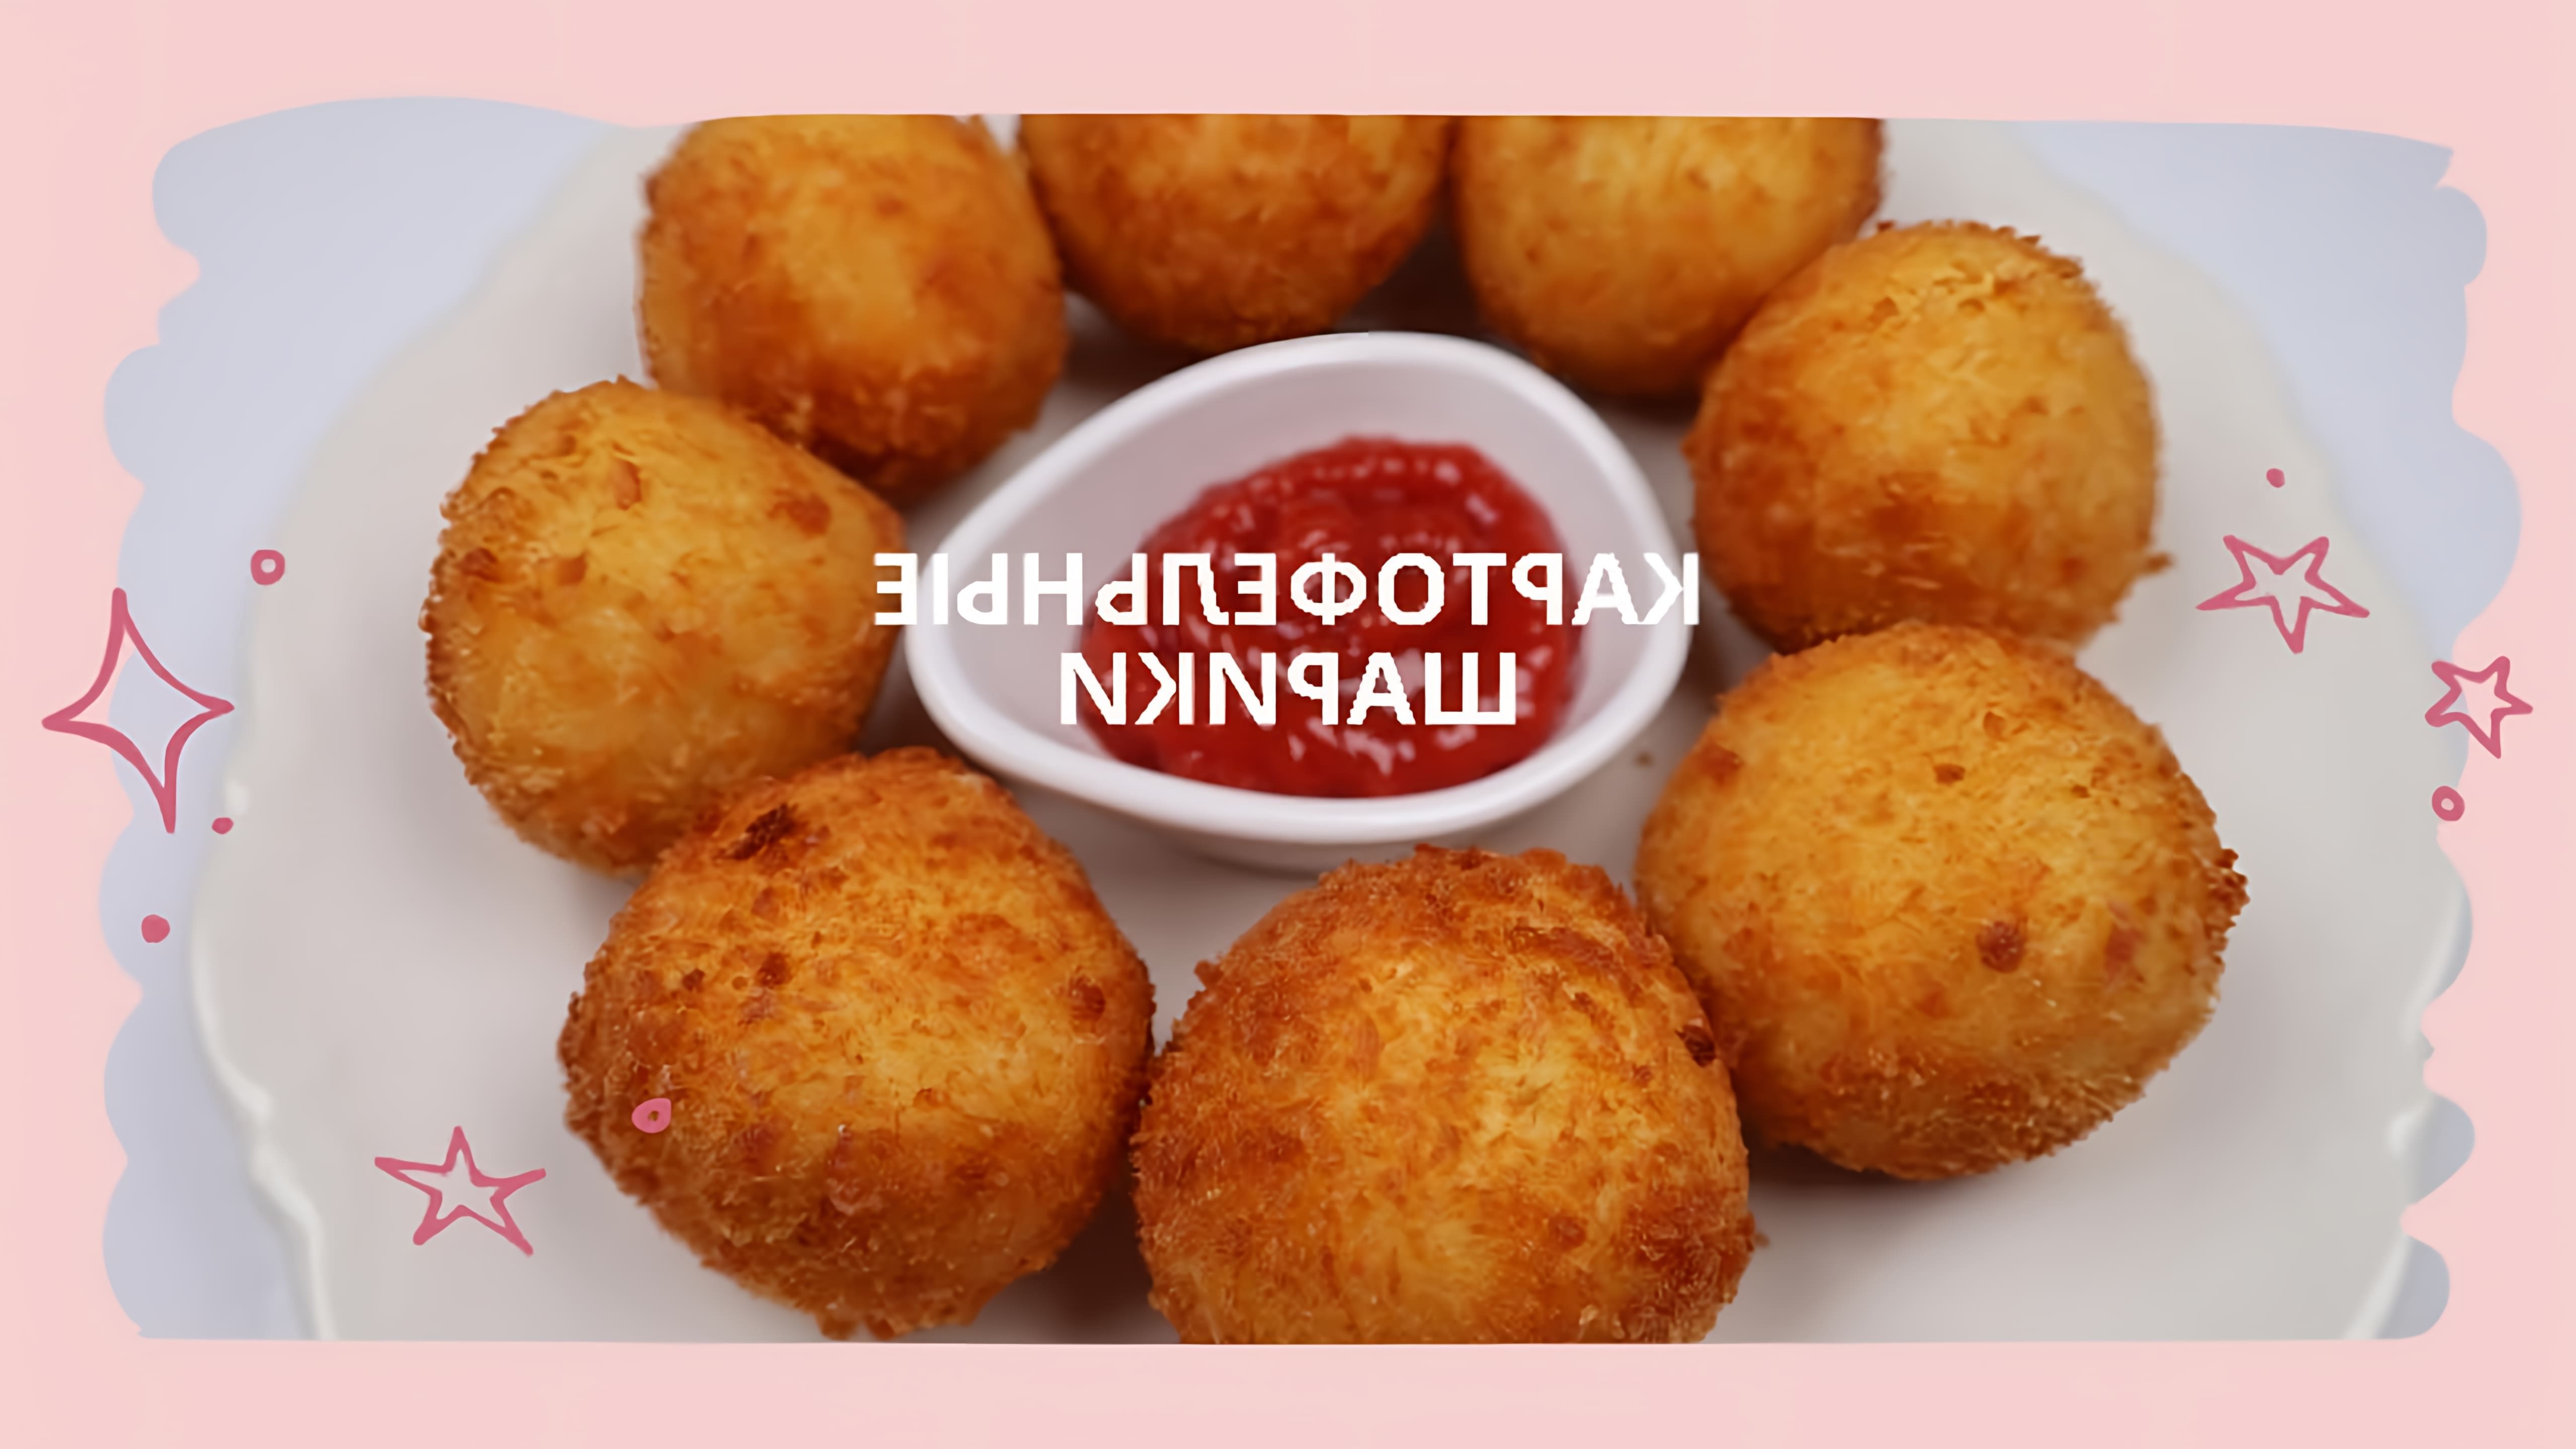 Жаренные картофельные шарики - это вкусное и простое блюдо, которое можно приготовить дома